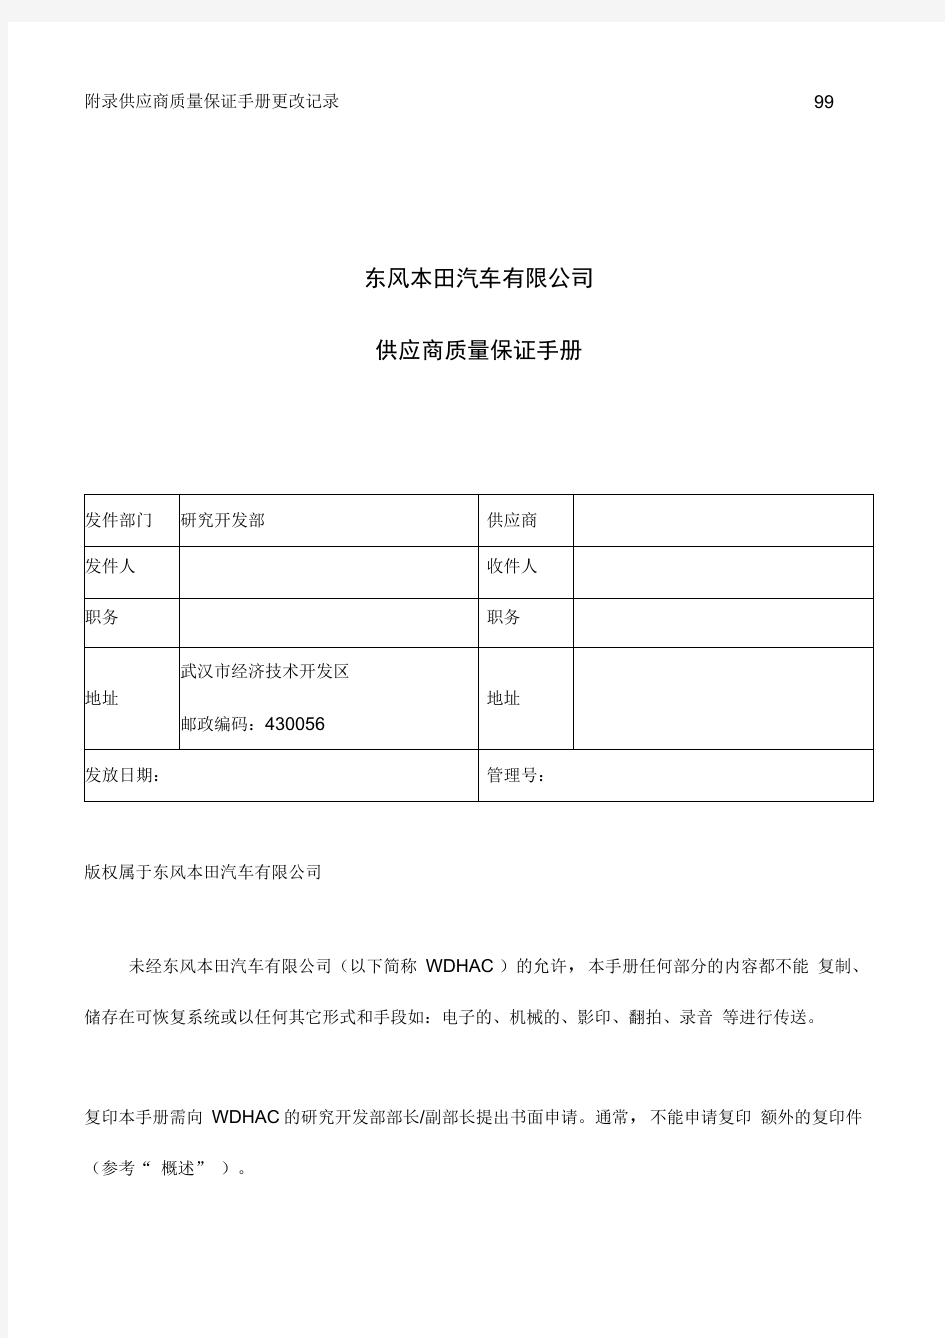 东风本田汽车有限公司供应商质量保证手册(1)